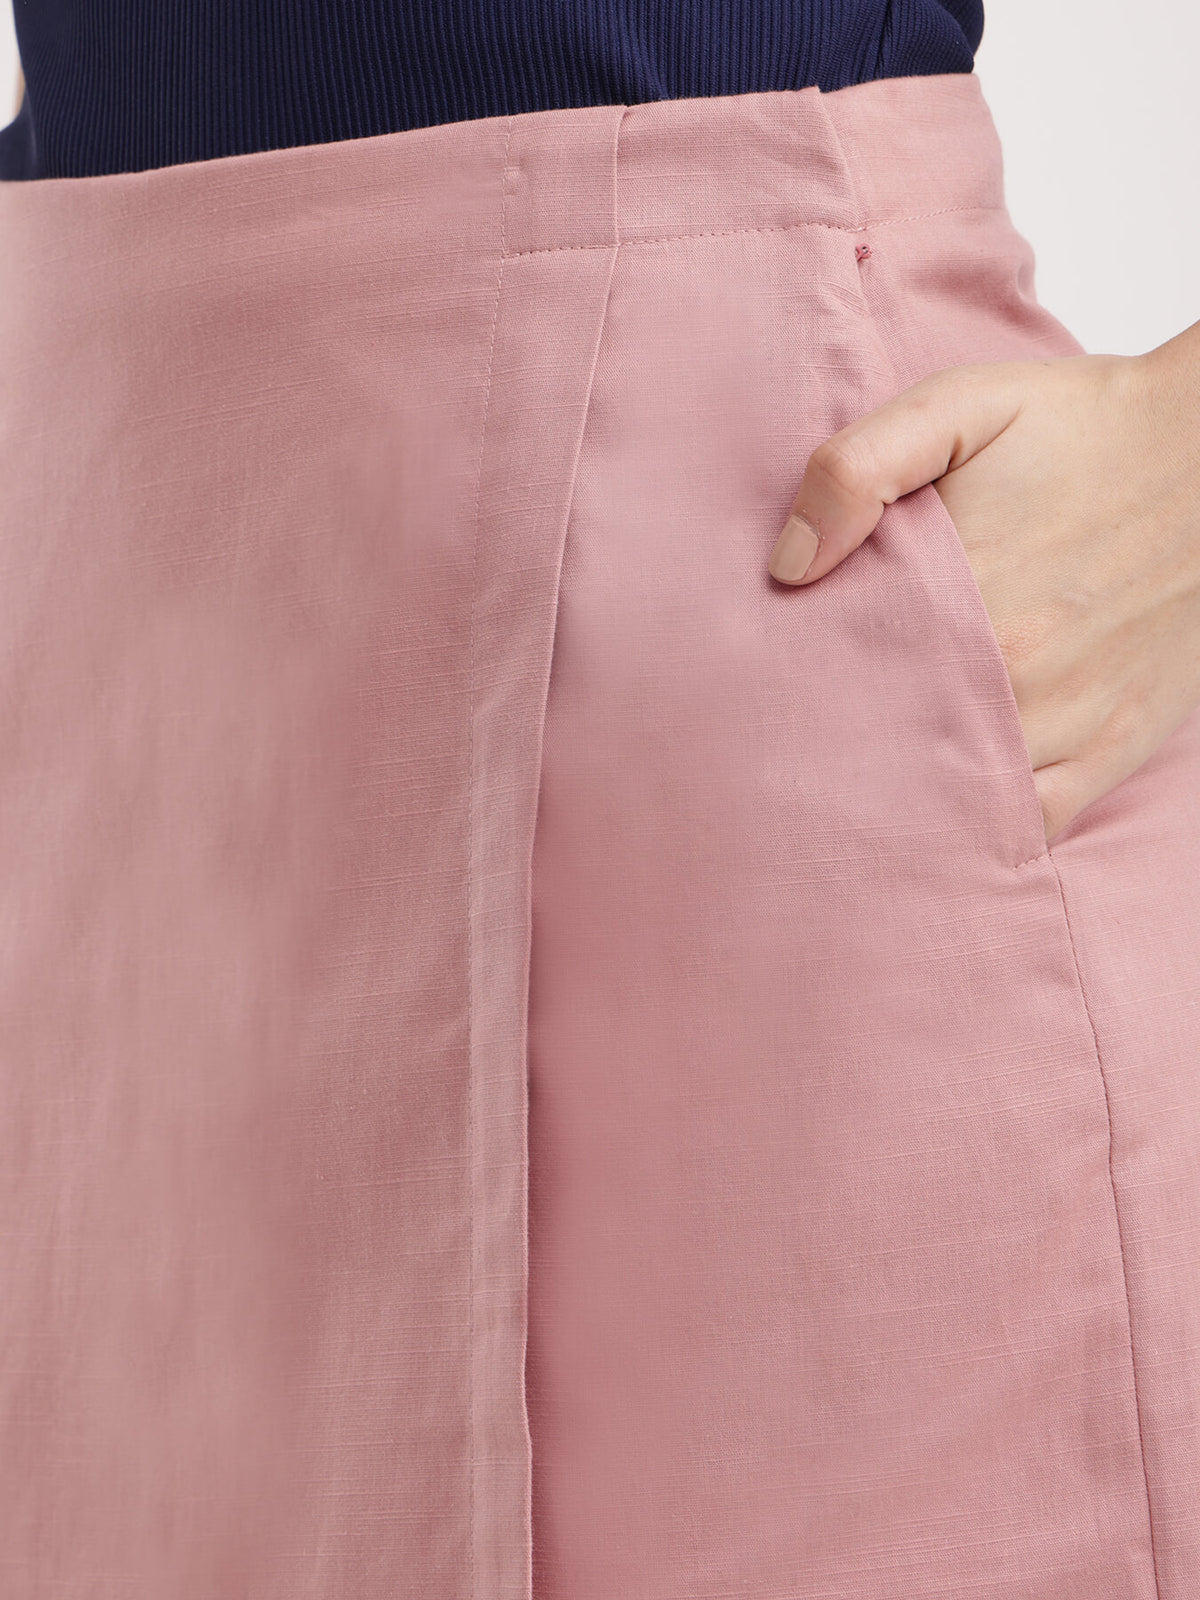 Linen Front Overlap Panel Skort - Dusty Pink